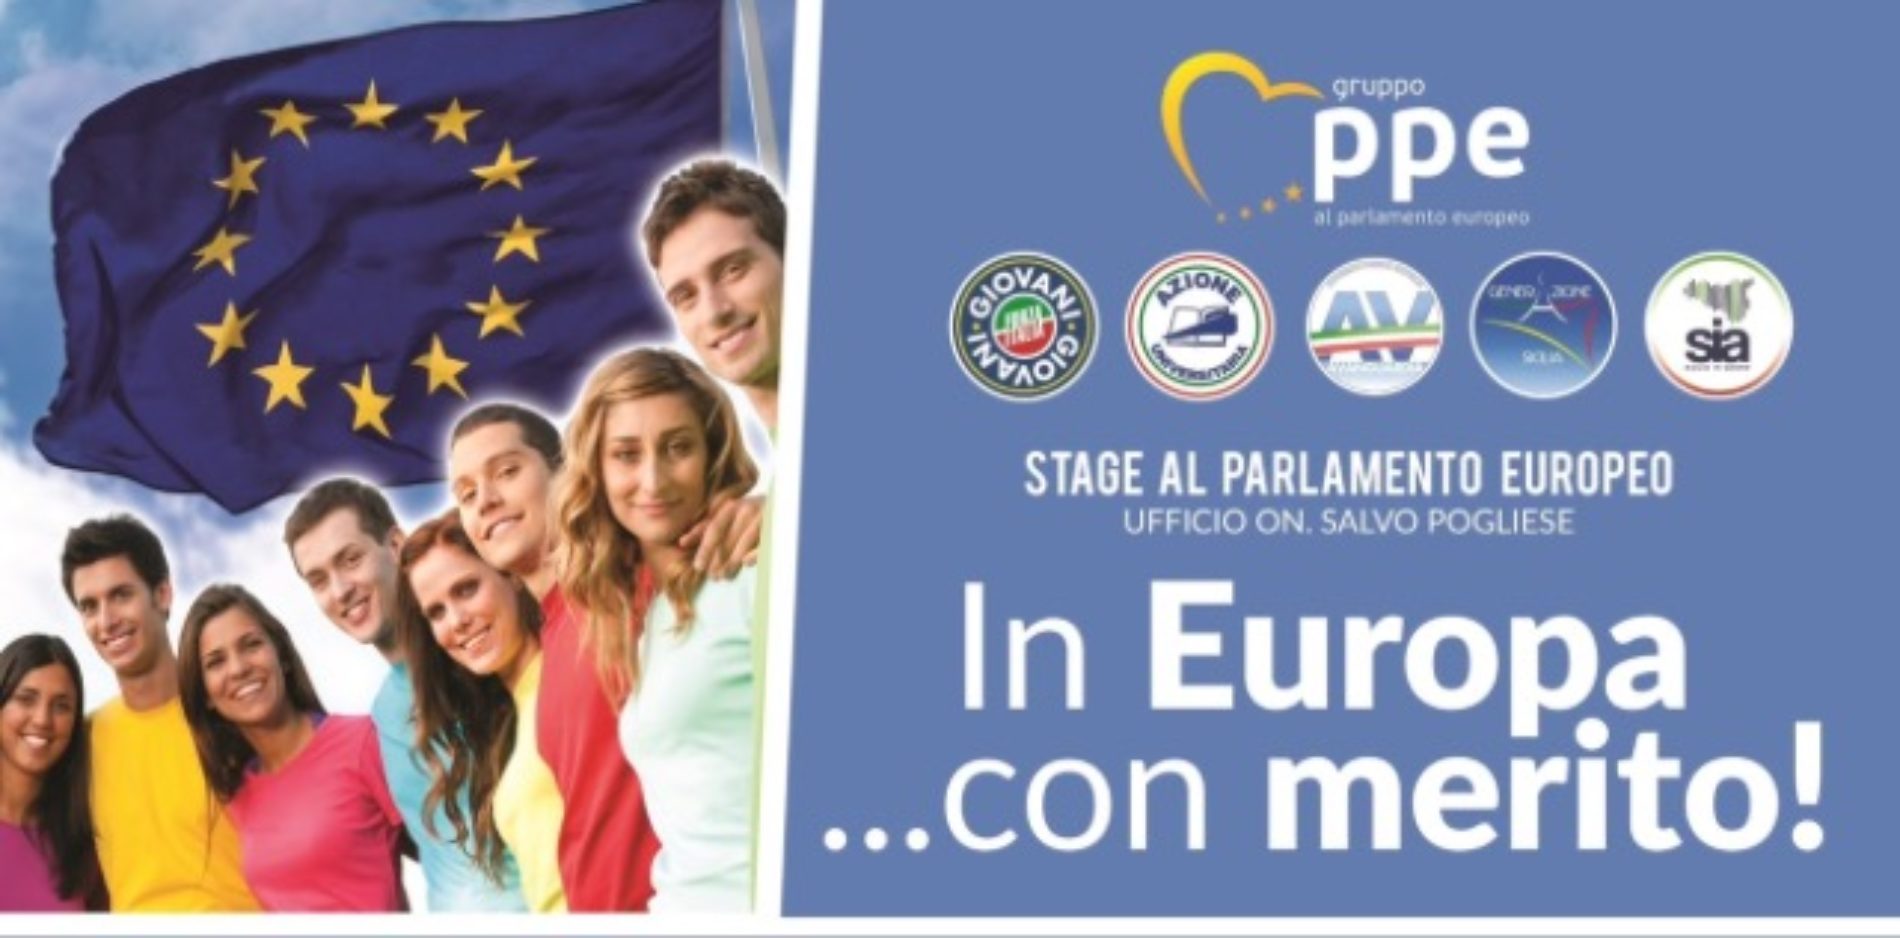 Conferenza stampa all’evento “In Europa… con merito!” a Catania nella facoltà di Scienze Politiche dove verranno presentati i 6 giovani stagisti che si recheranno a Bruxelles